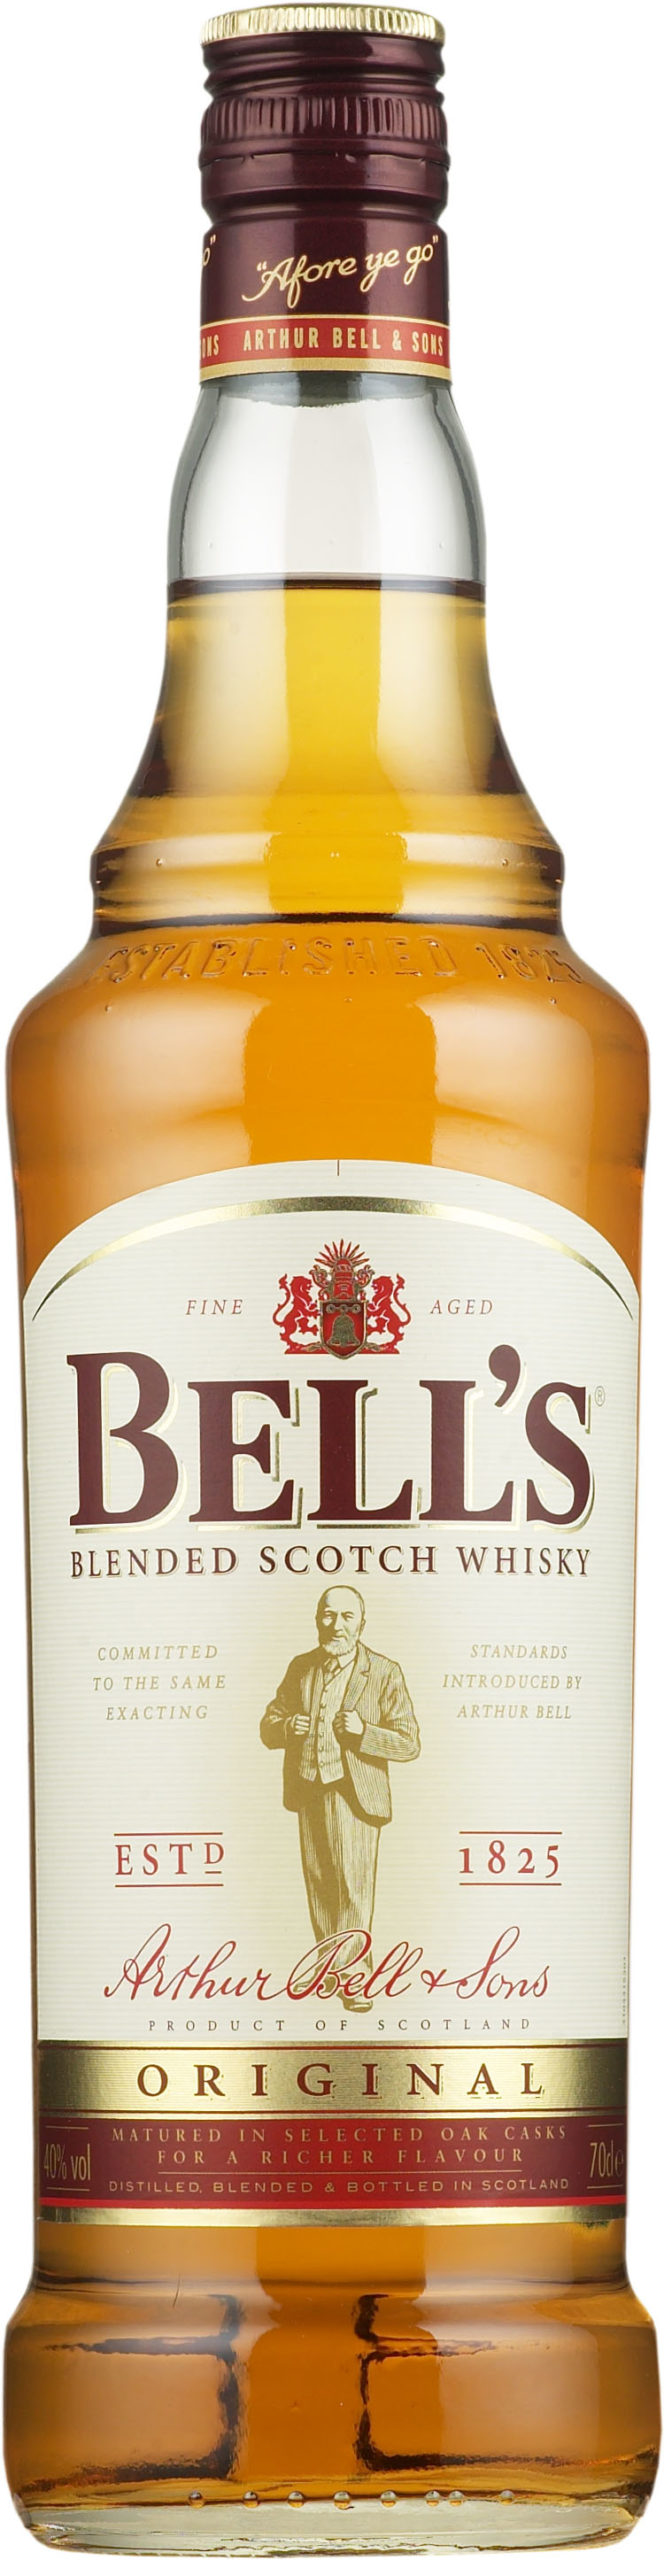 Bell’s Original Scotch Whisky